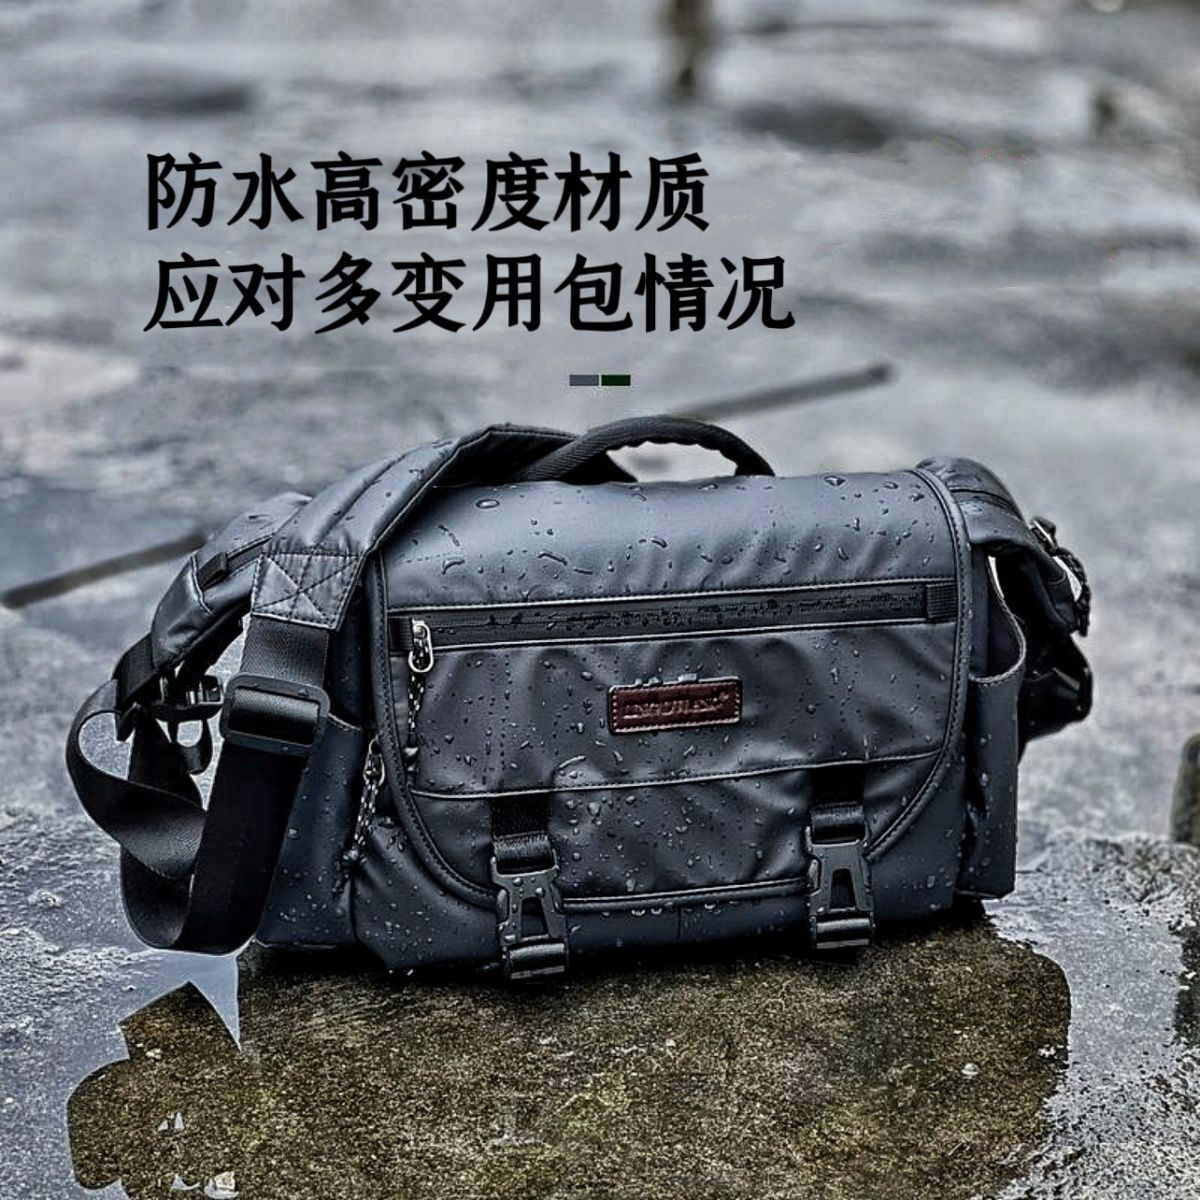 相機背包 相機包 防水相機包 適用佳能索尼康富士微單反便攜斜挎戶外多功能男攝影包